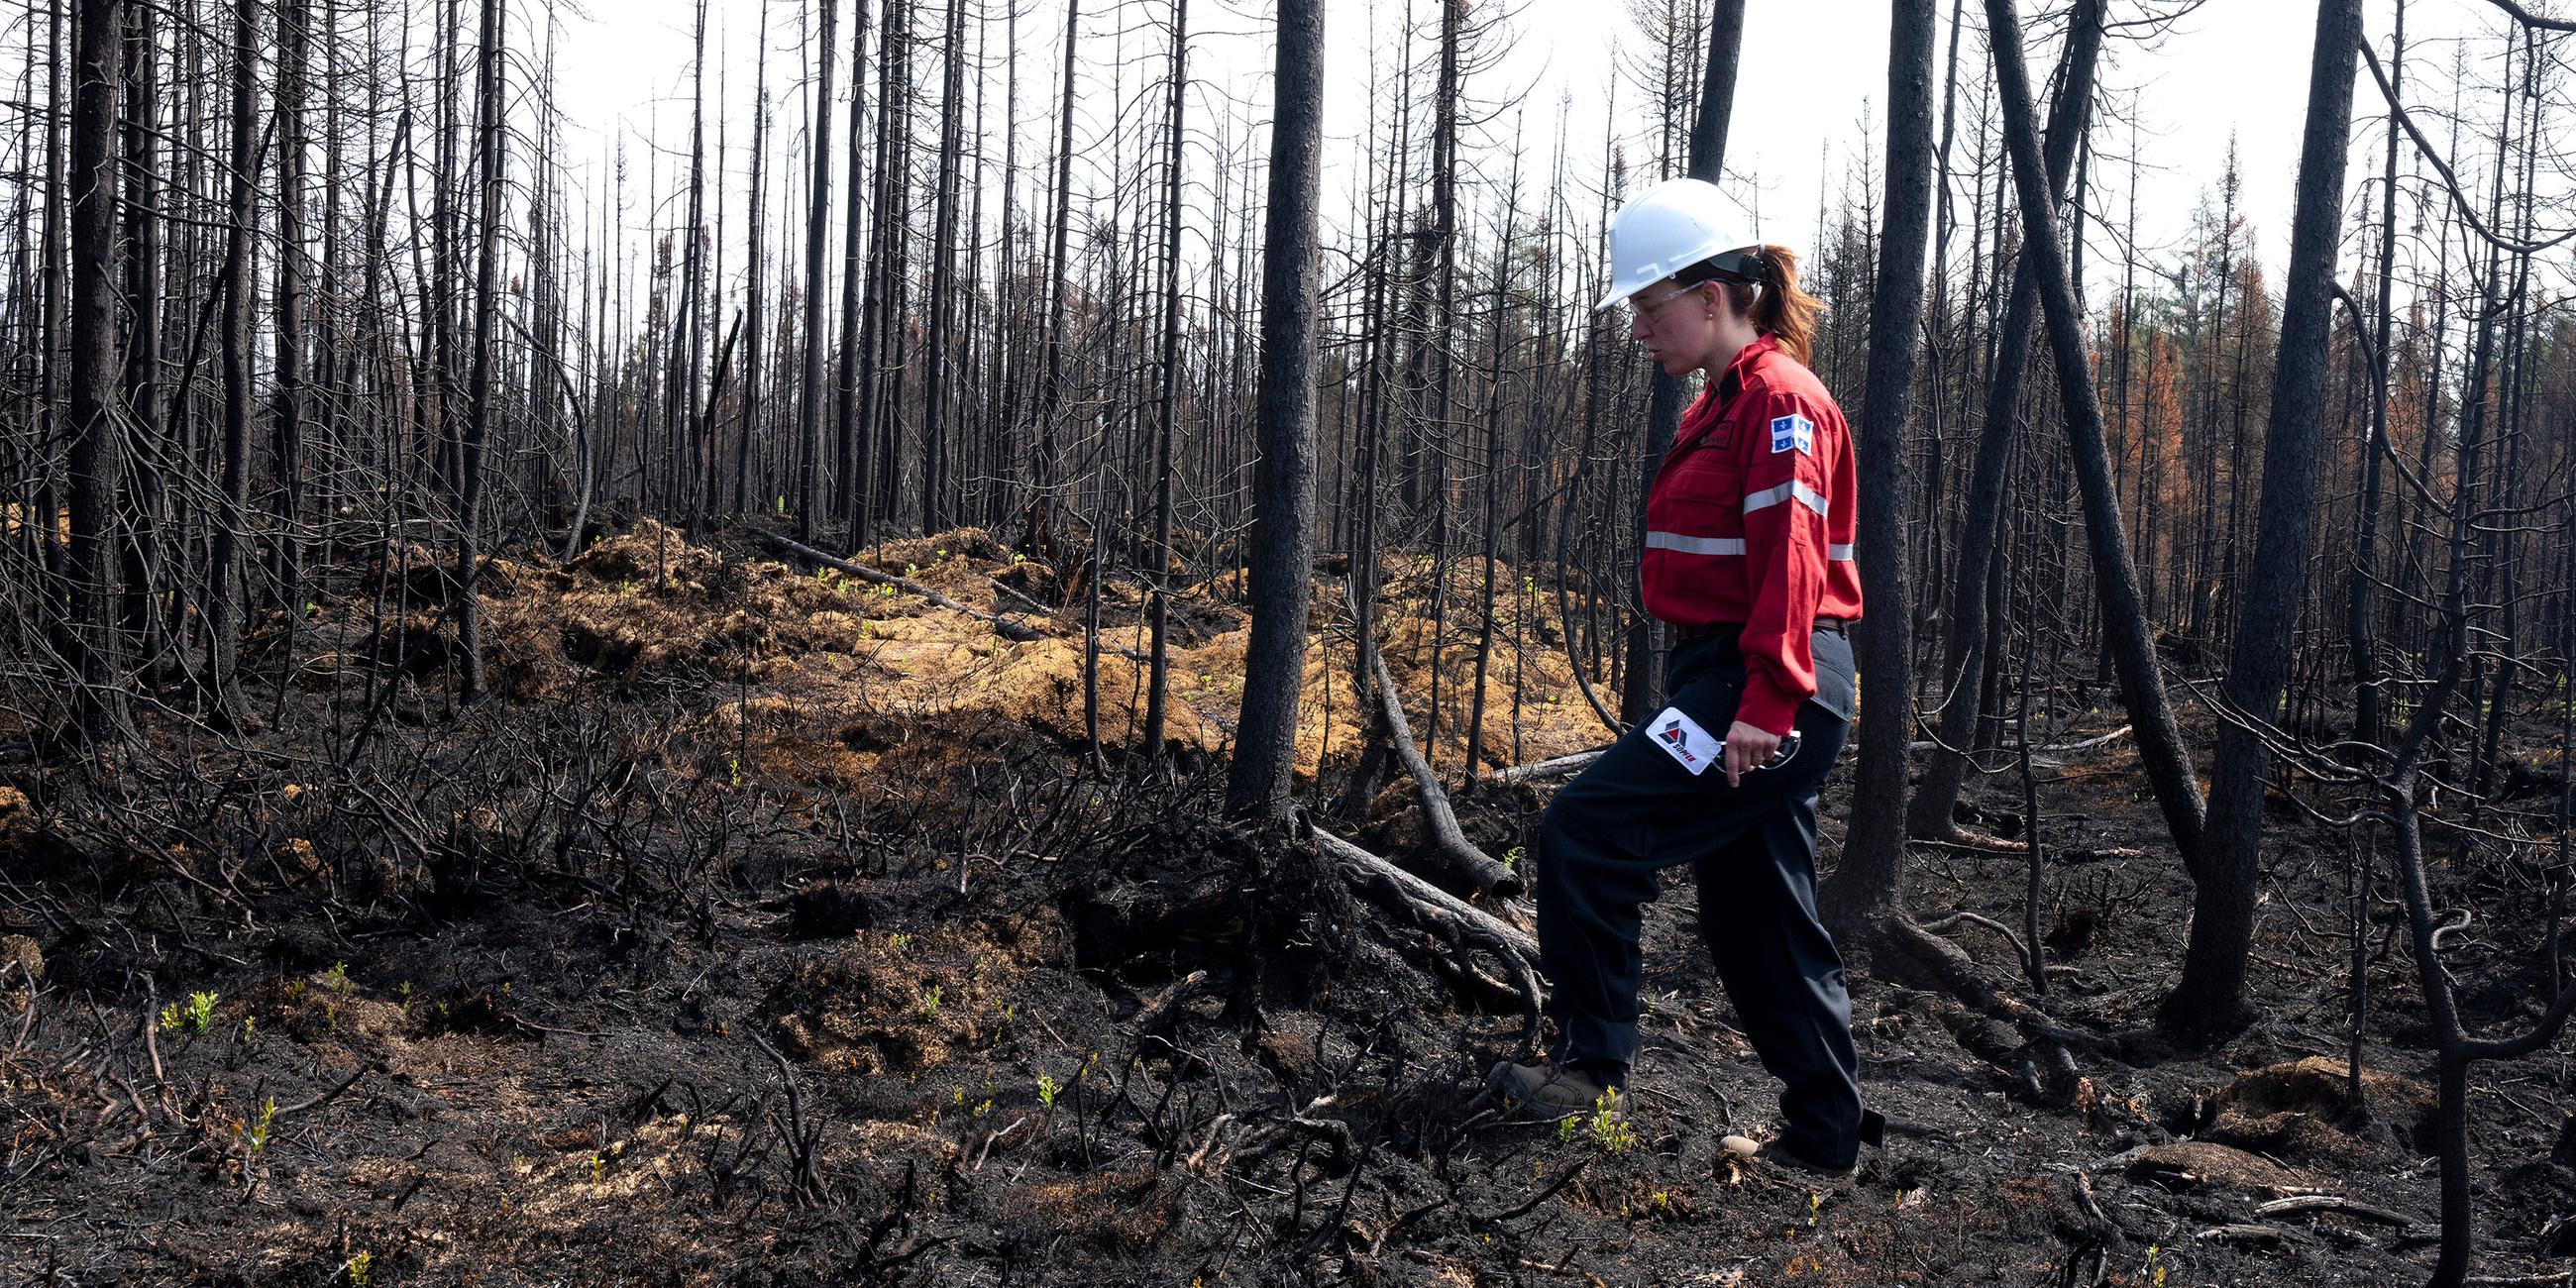 Feuerwehrfrau prüft auf Schwelbrände im Wald bei Lebel-sur-Quevillon, Kanada